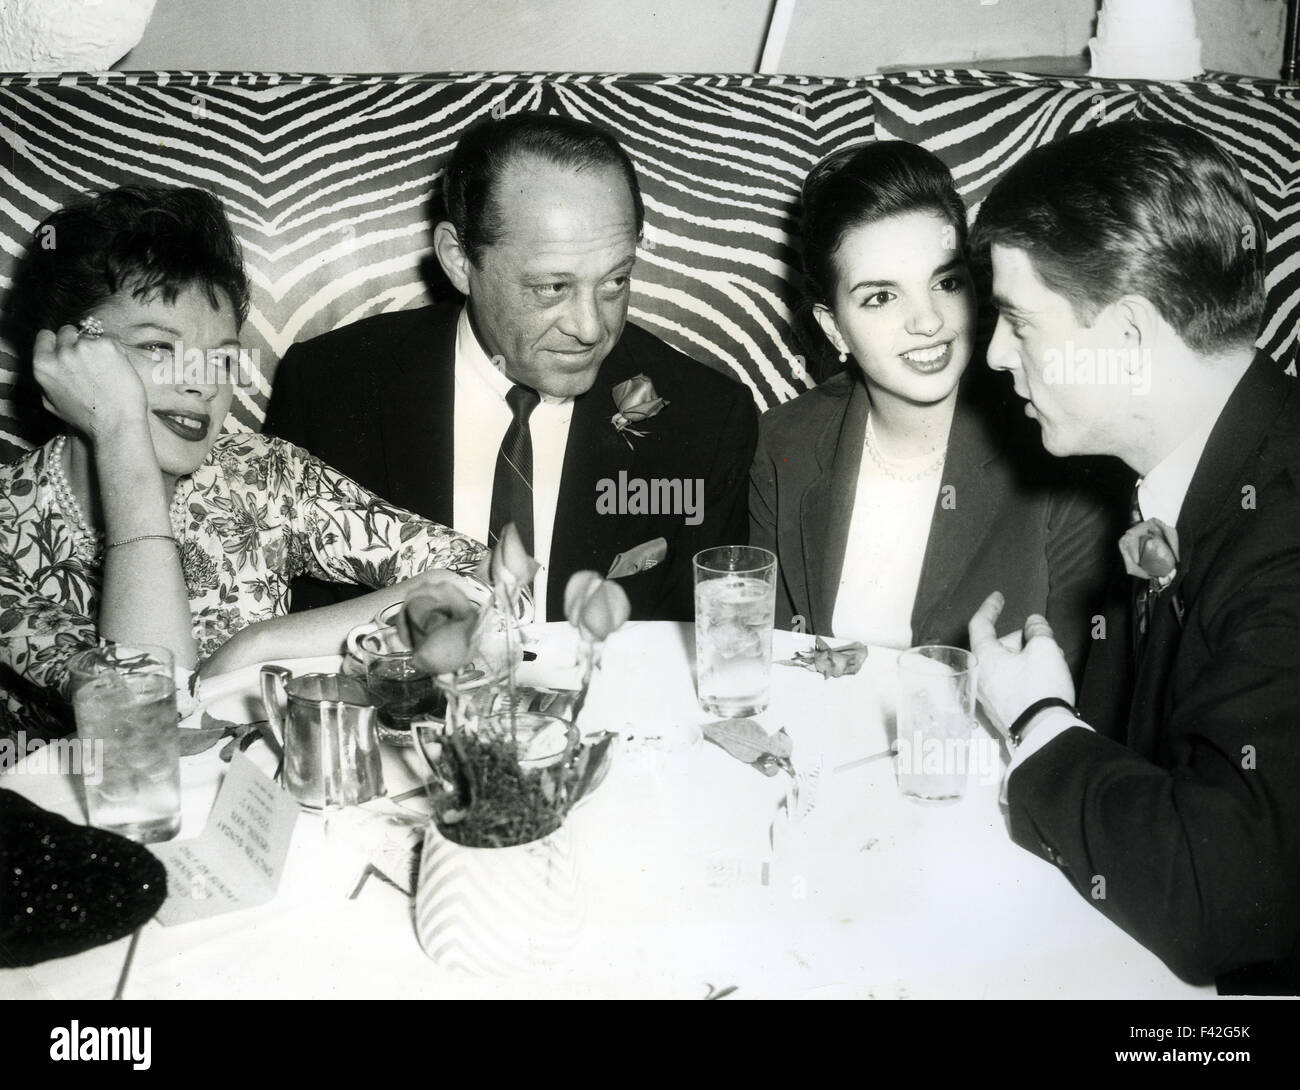 JUDY GARLAND à gauche avec mari Sid Luff au restaurant El Maroc, New York, en avril 1963, fille du célèbre Liza Minnelli débuts sur scène dans le meilleur pied en avant à l'off-Broadway Theatre Stage 73. Liza est assis à côté de dancer Tracy Everett qui est apparu sur plusieurs de Judy Garland a des émissions de télévision. Banque D'Images